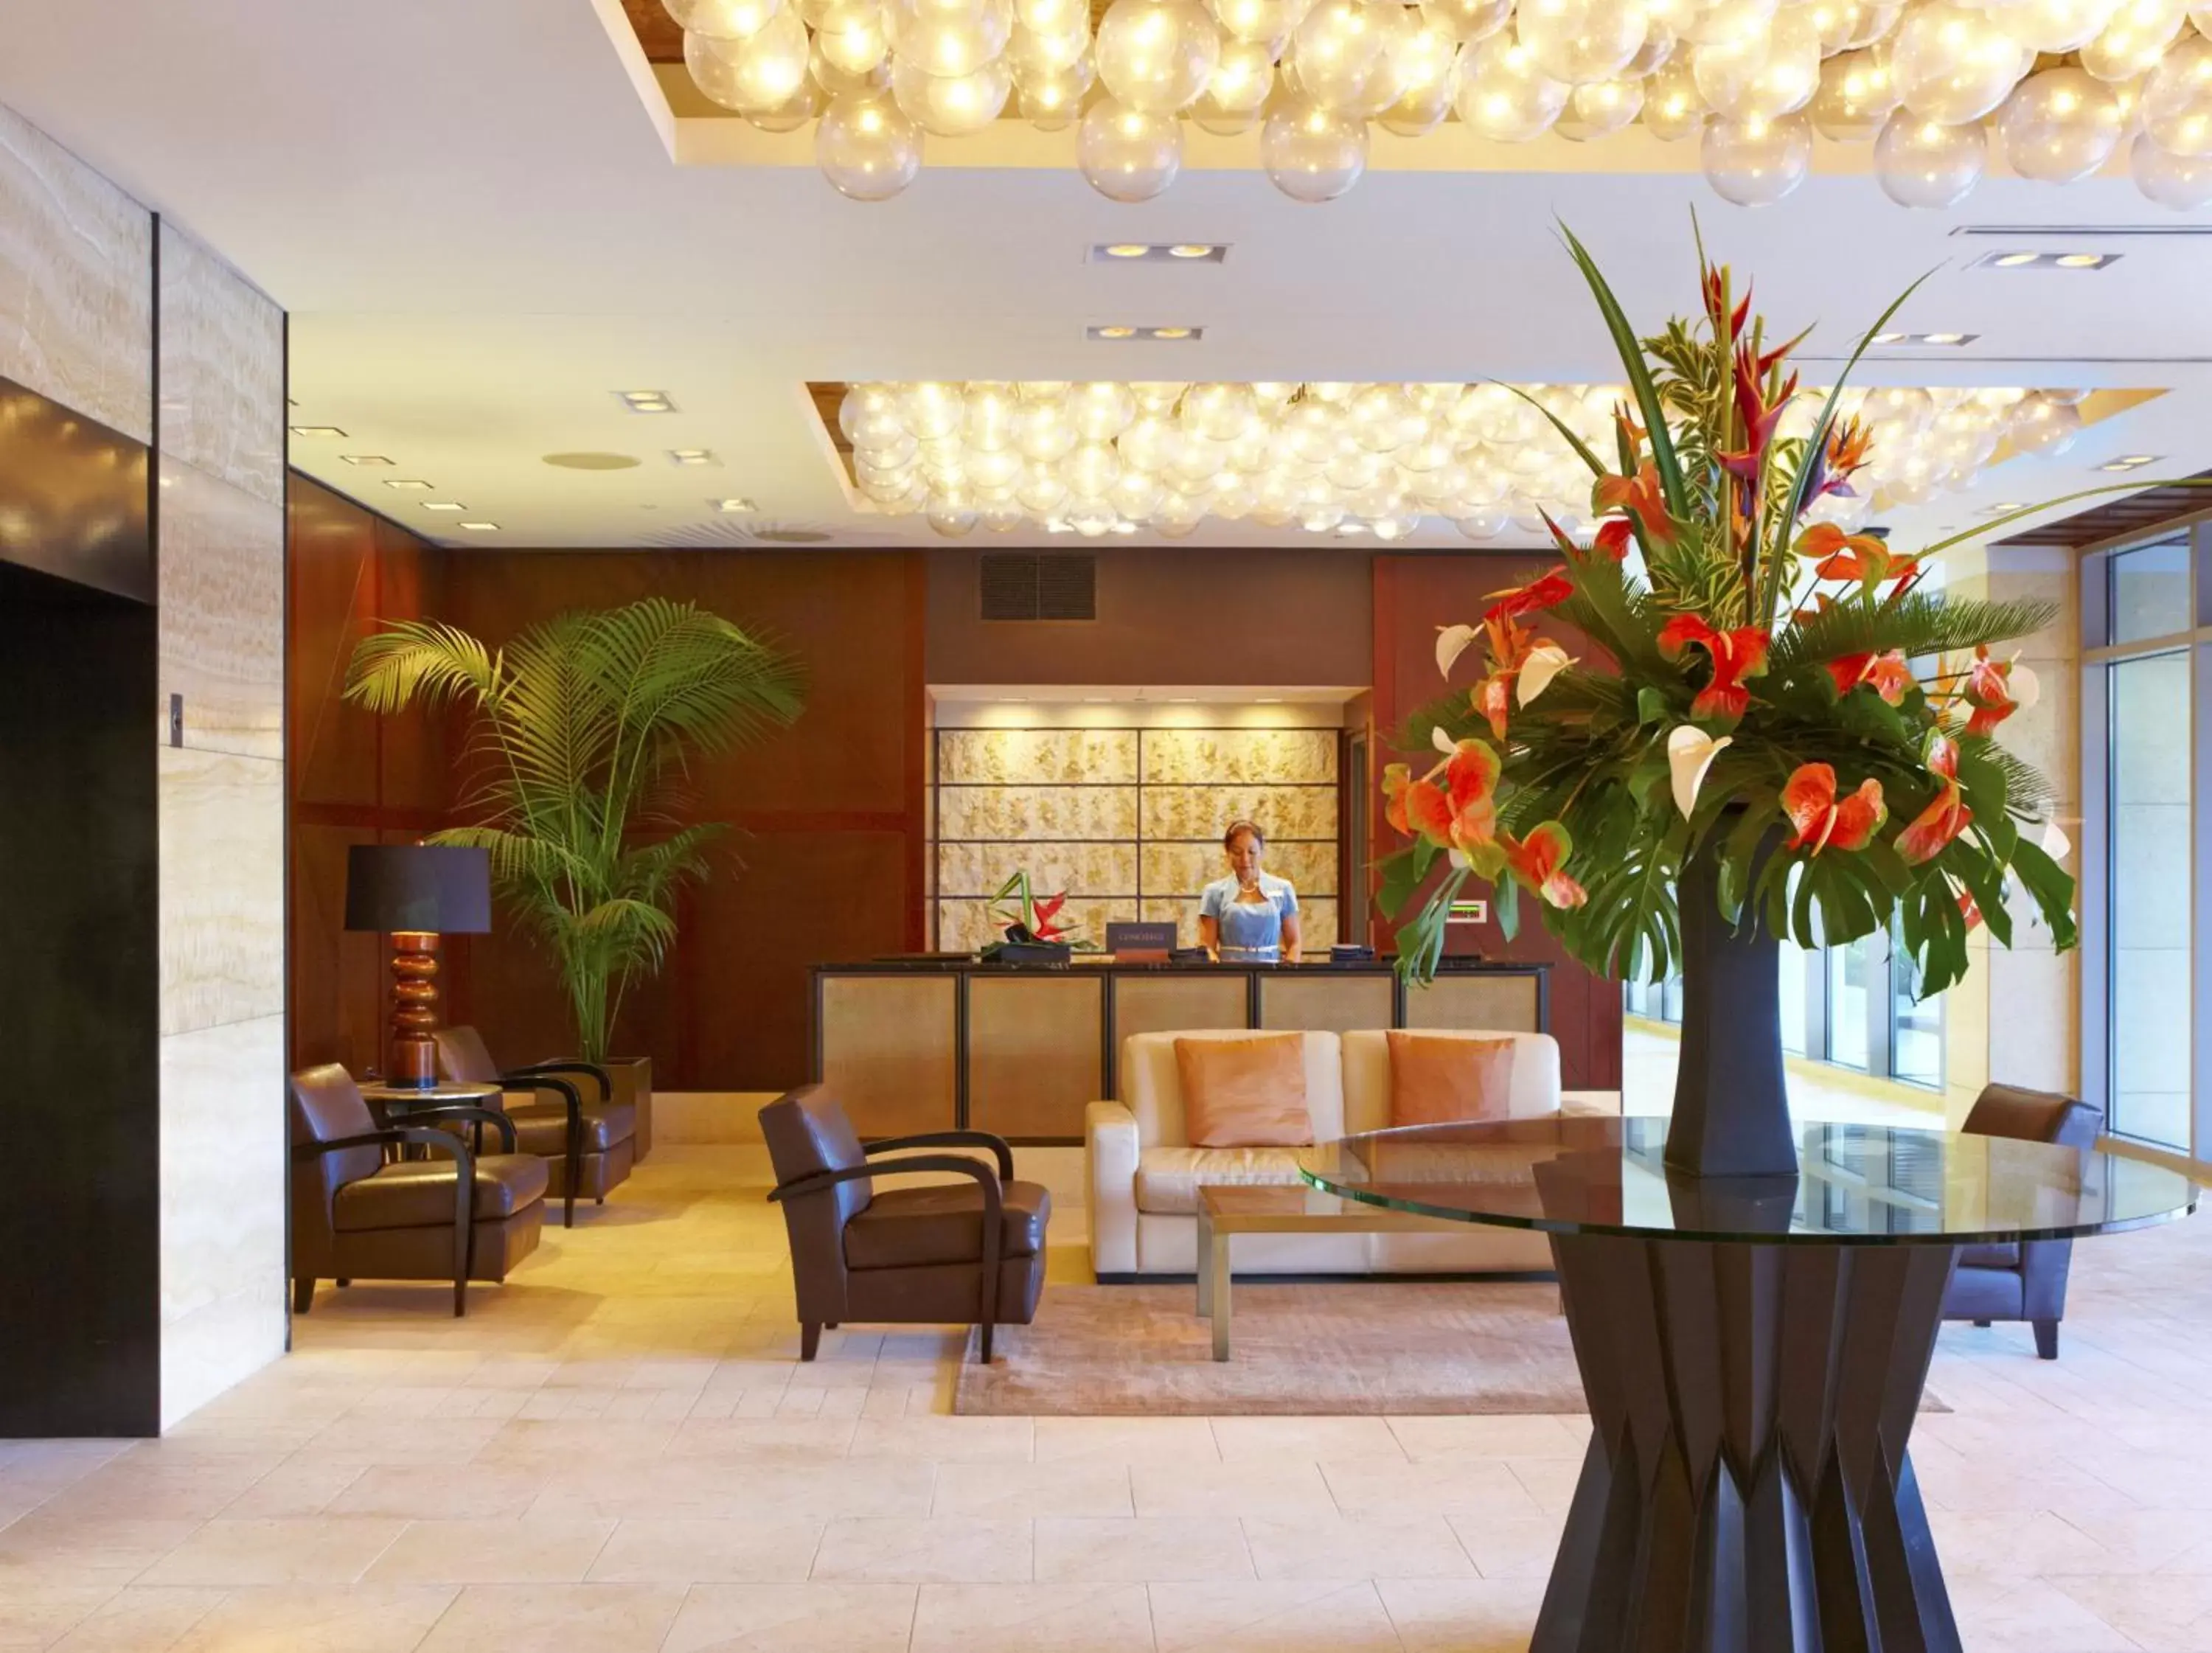 Lobby or reception, Lobby/Reception in Trump International Hotel Waikiki